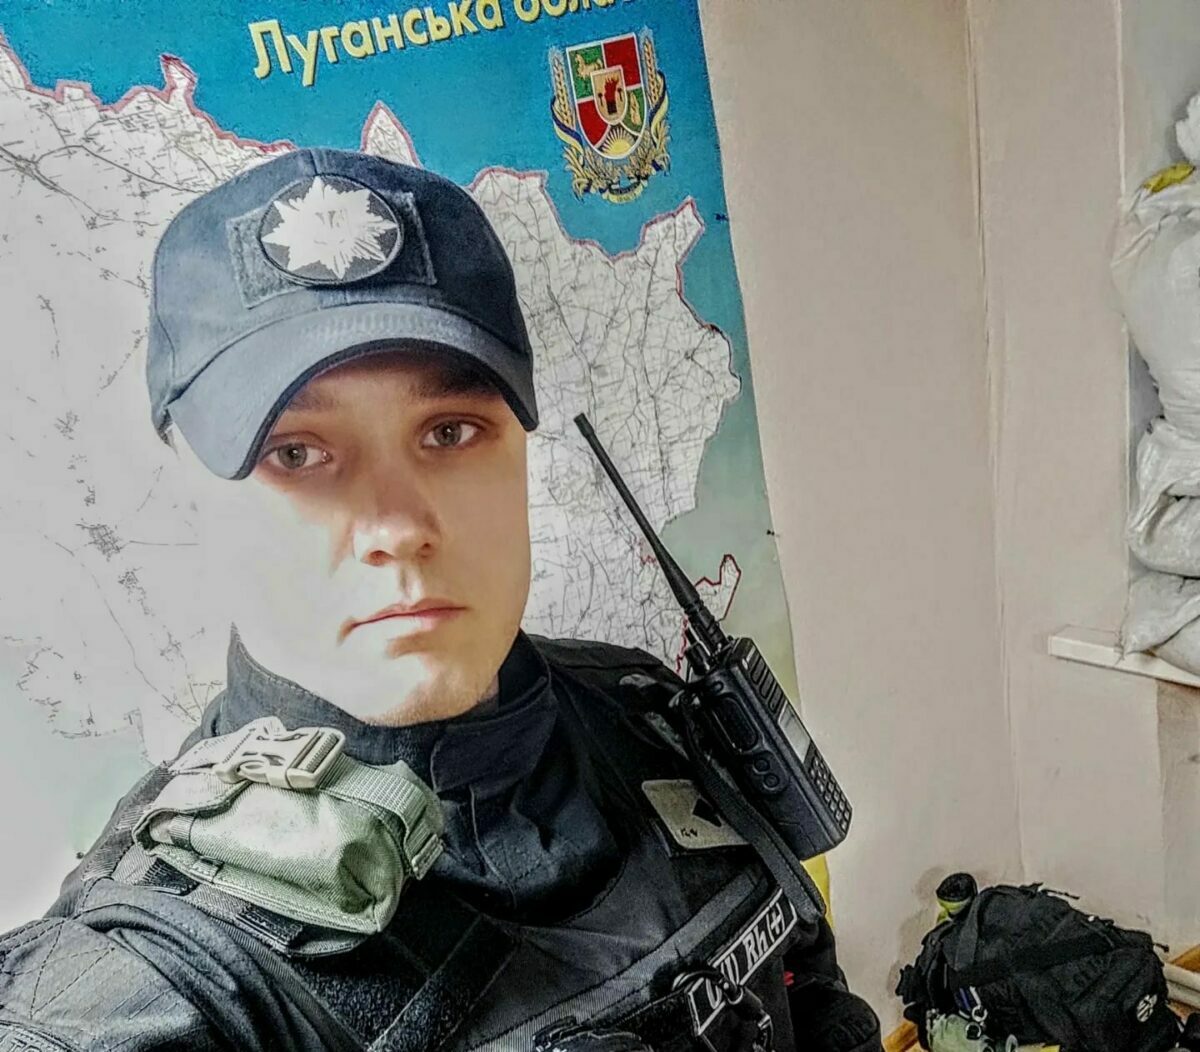 Цифри не називатиму, але їх одиниці — голова патрульної поліції Луганщини про зрадників серед колег